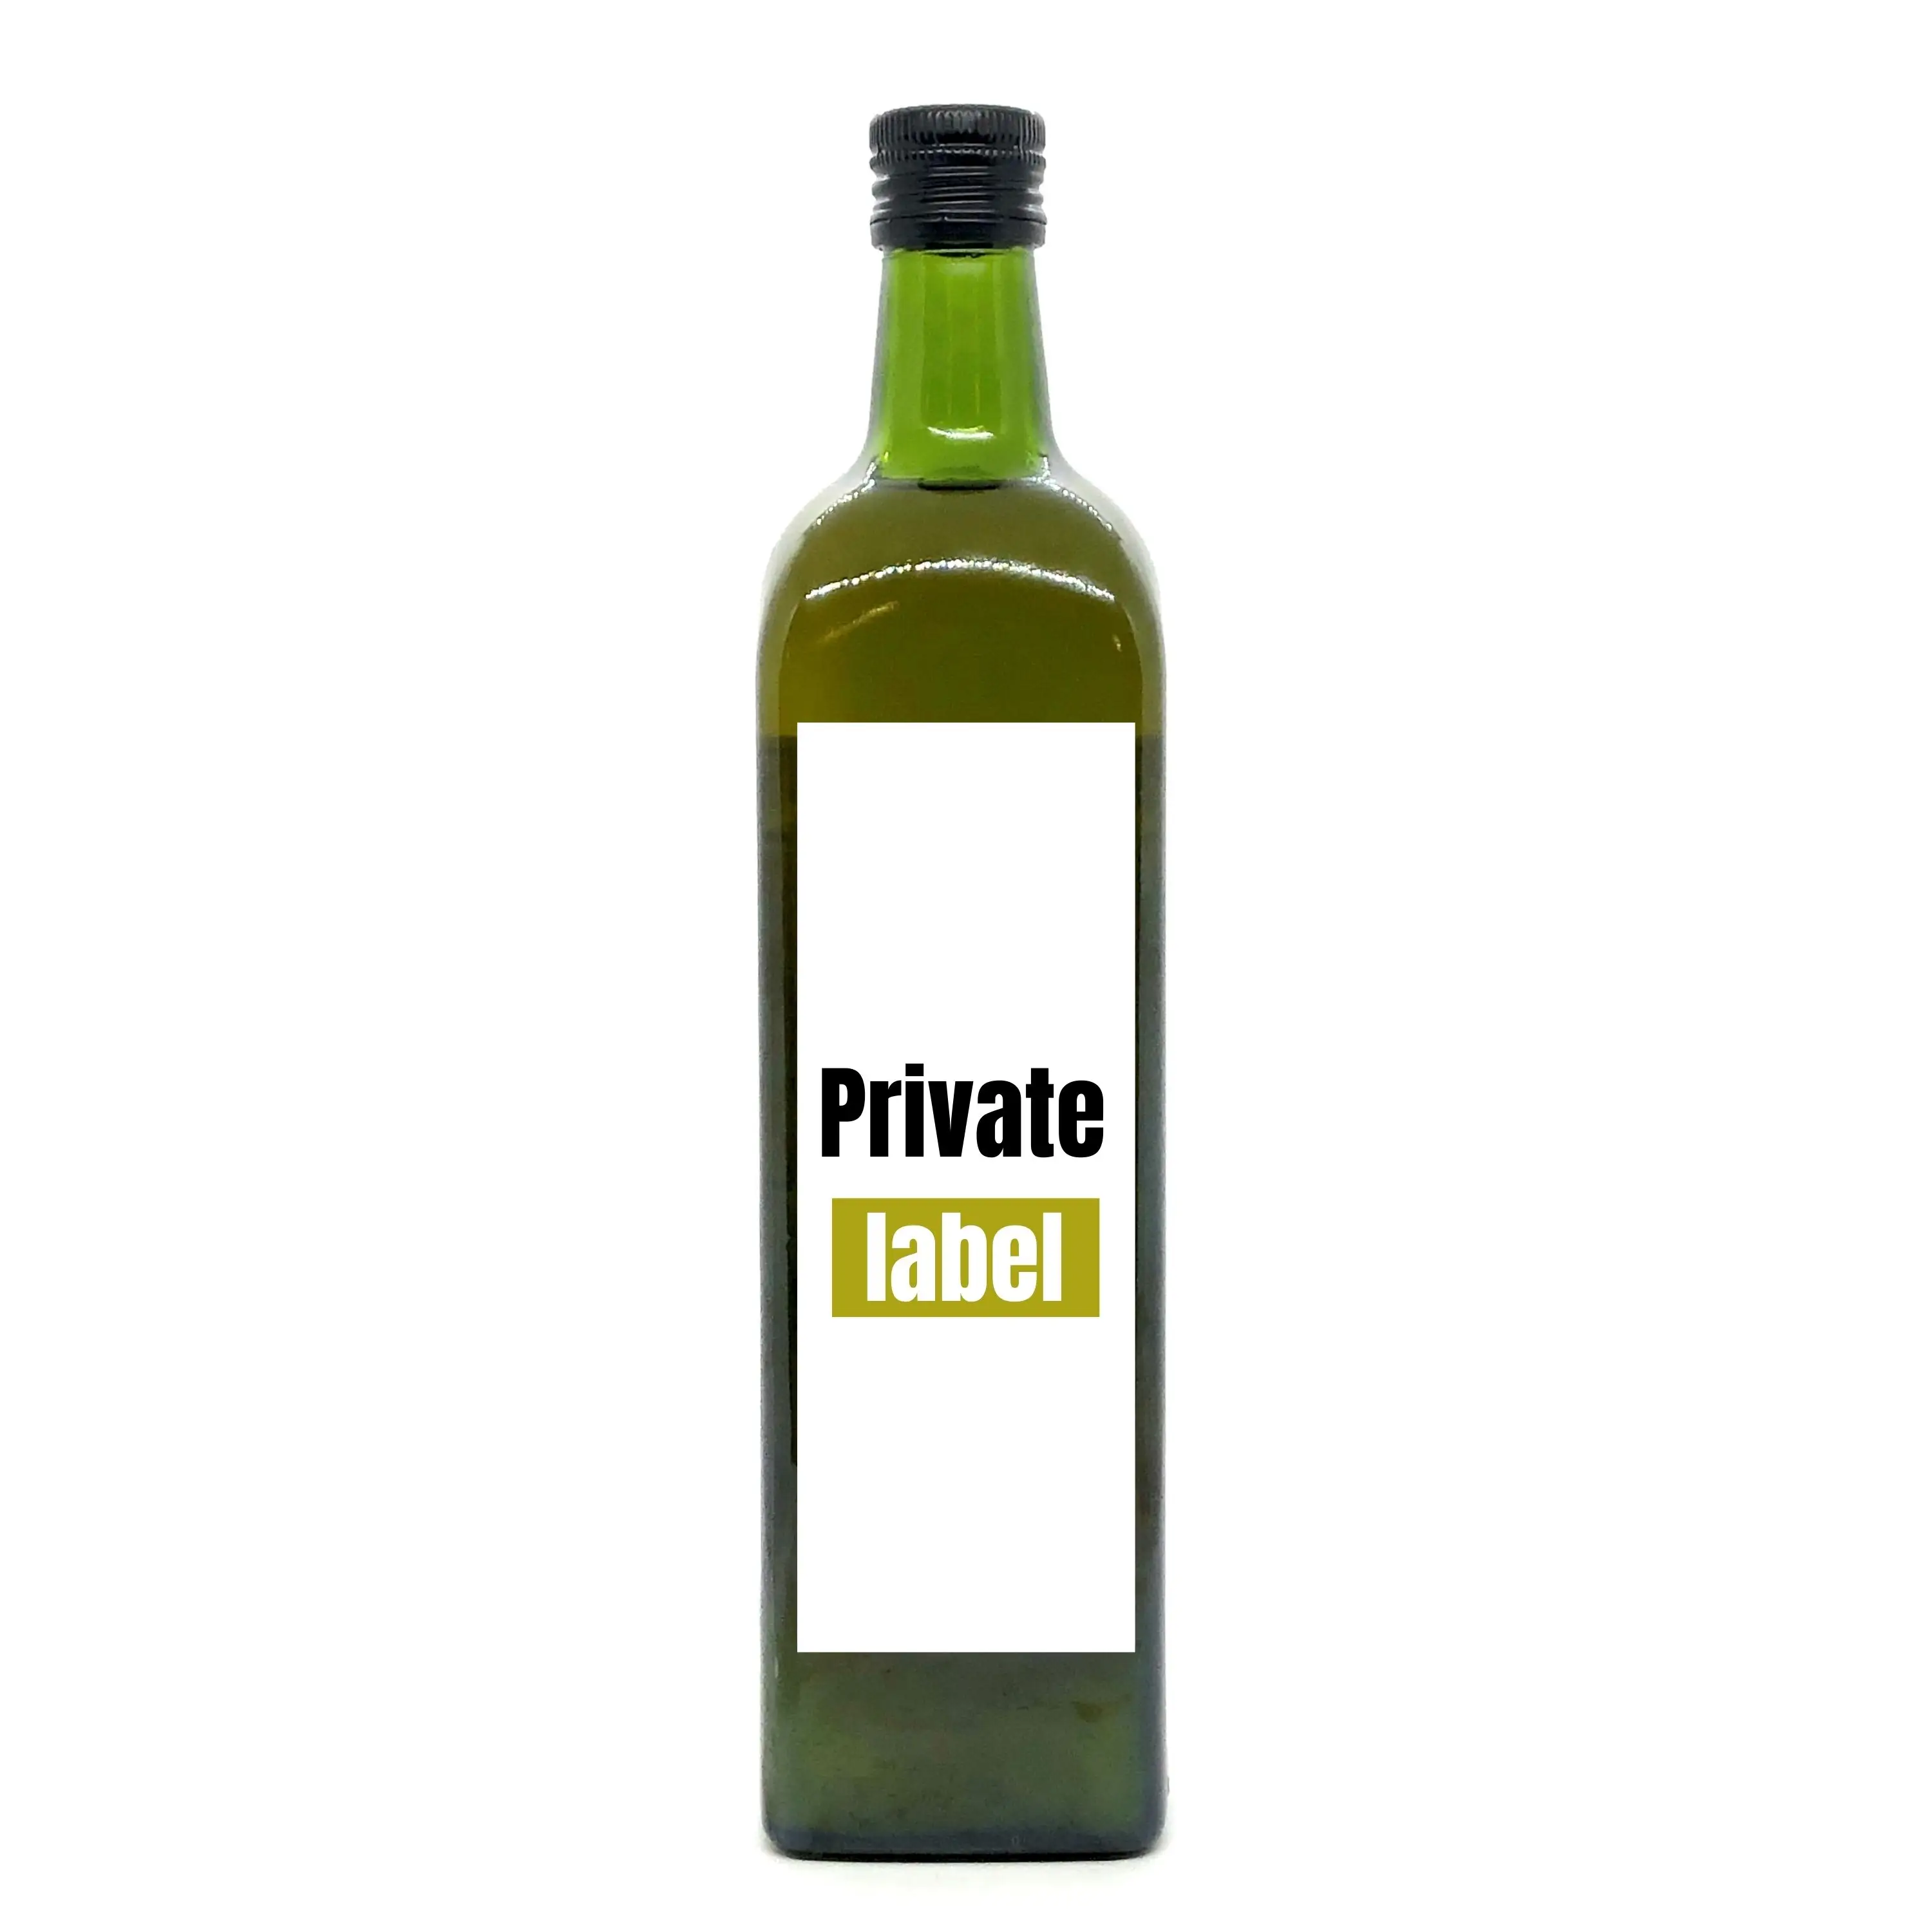 Eigenmarke Erste kaltgepresste spanische Gourmet-1L-Glas marasca grüne Flasche für Gewürz- und Kochen natives Olivenöl